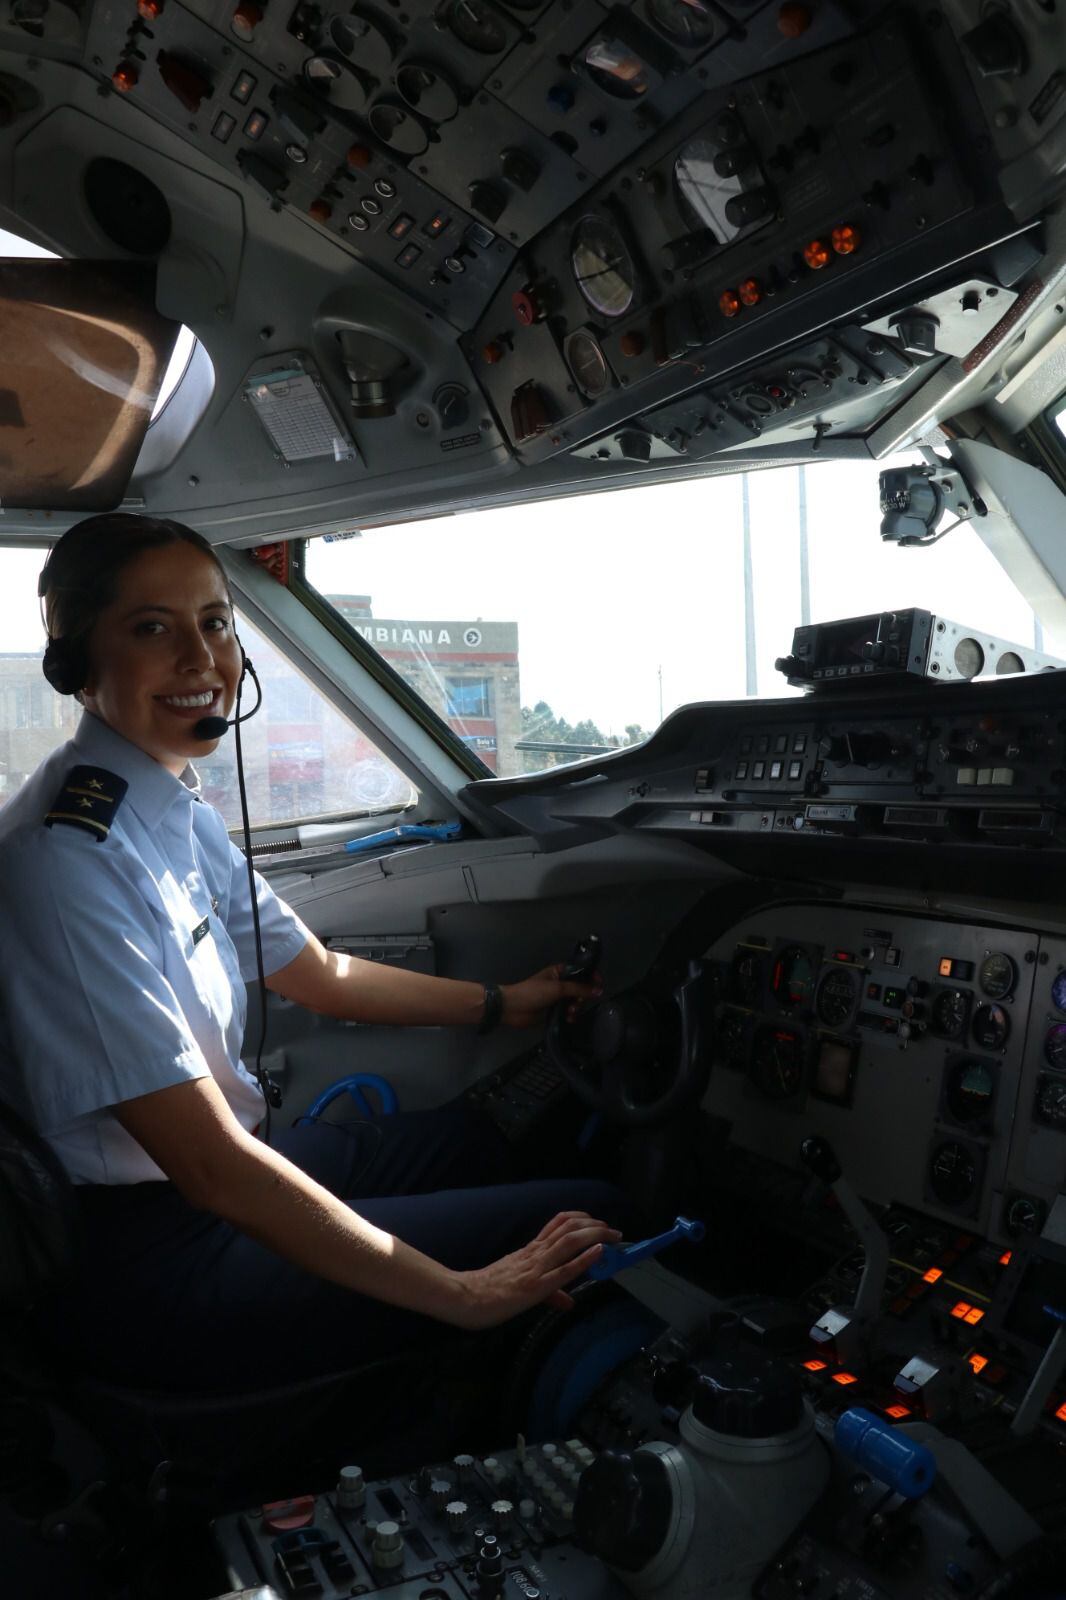 Pilotear aviones como el Fokker-28 le ha brindado experiencias únicas, contribuyendo a la diplomacia y seguridad nacional, y enfatizando el compromiso femenino con Colombia - crédito Ofcop Catam